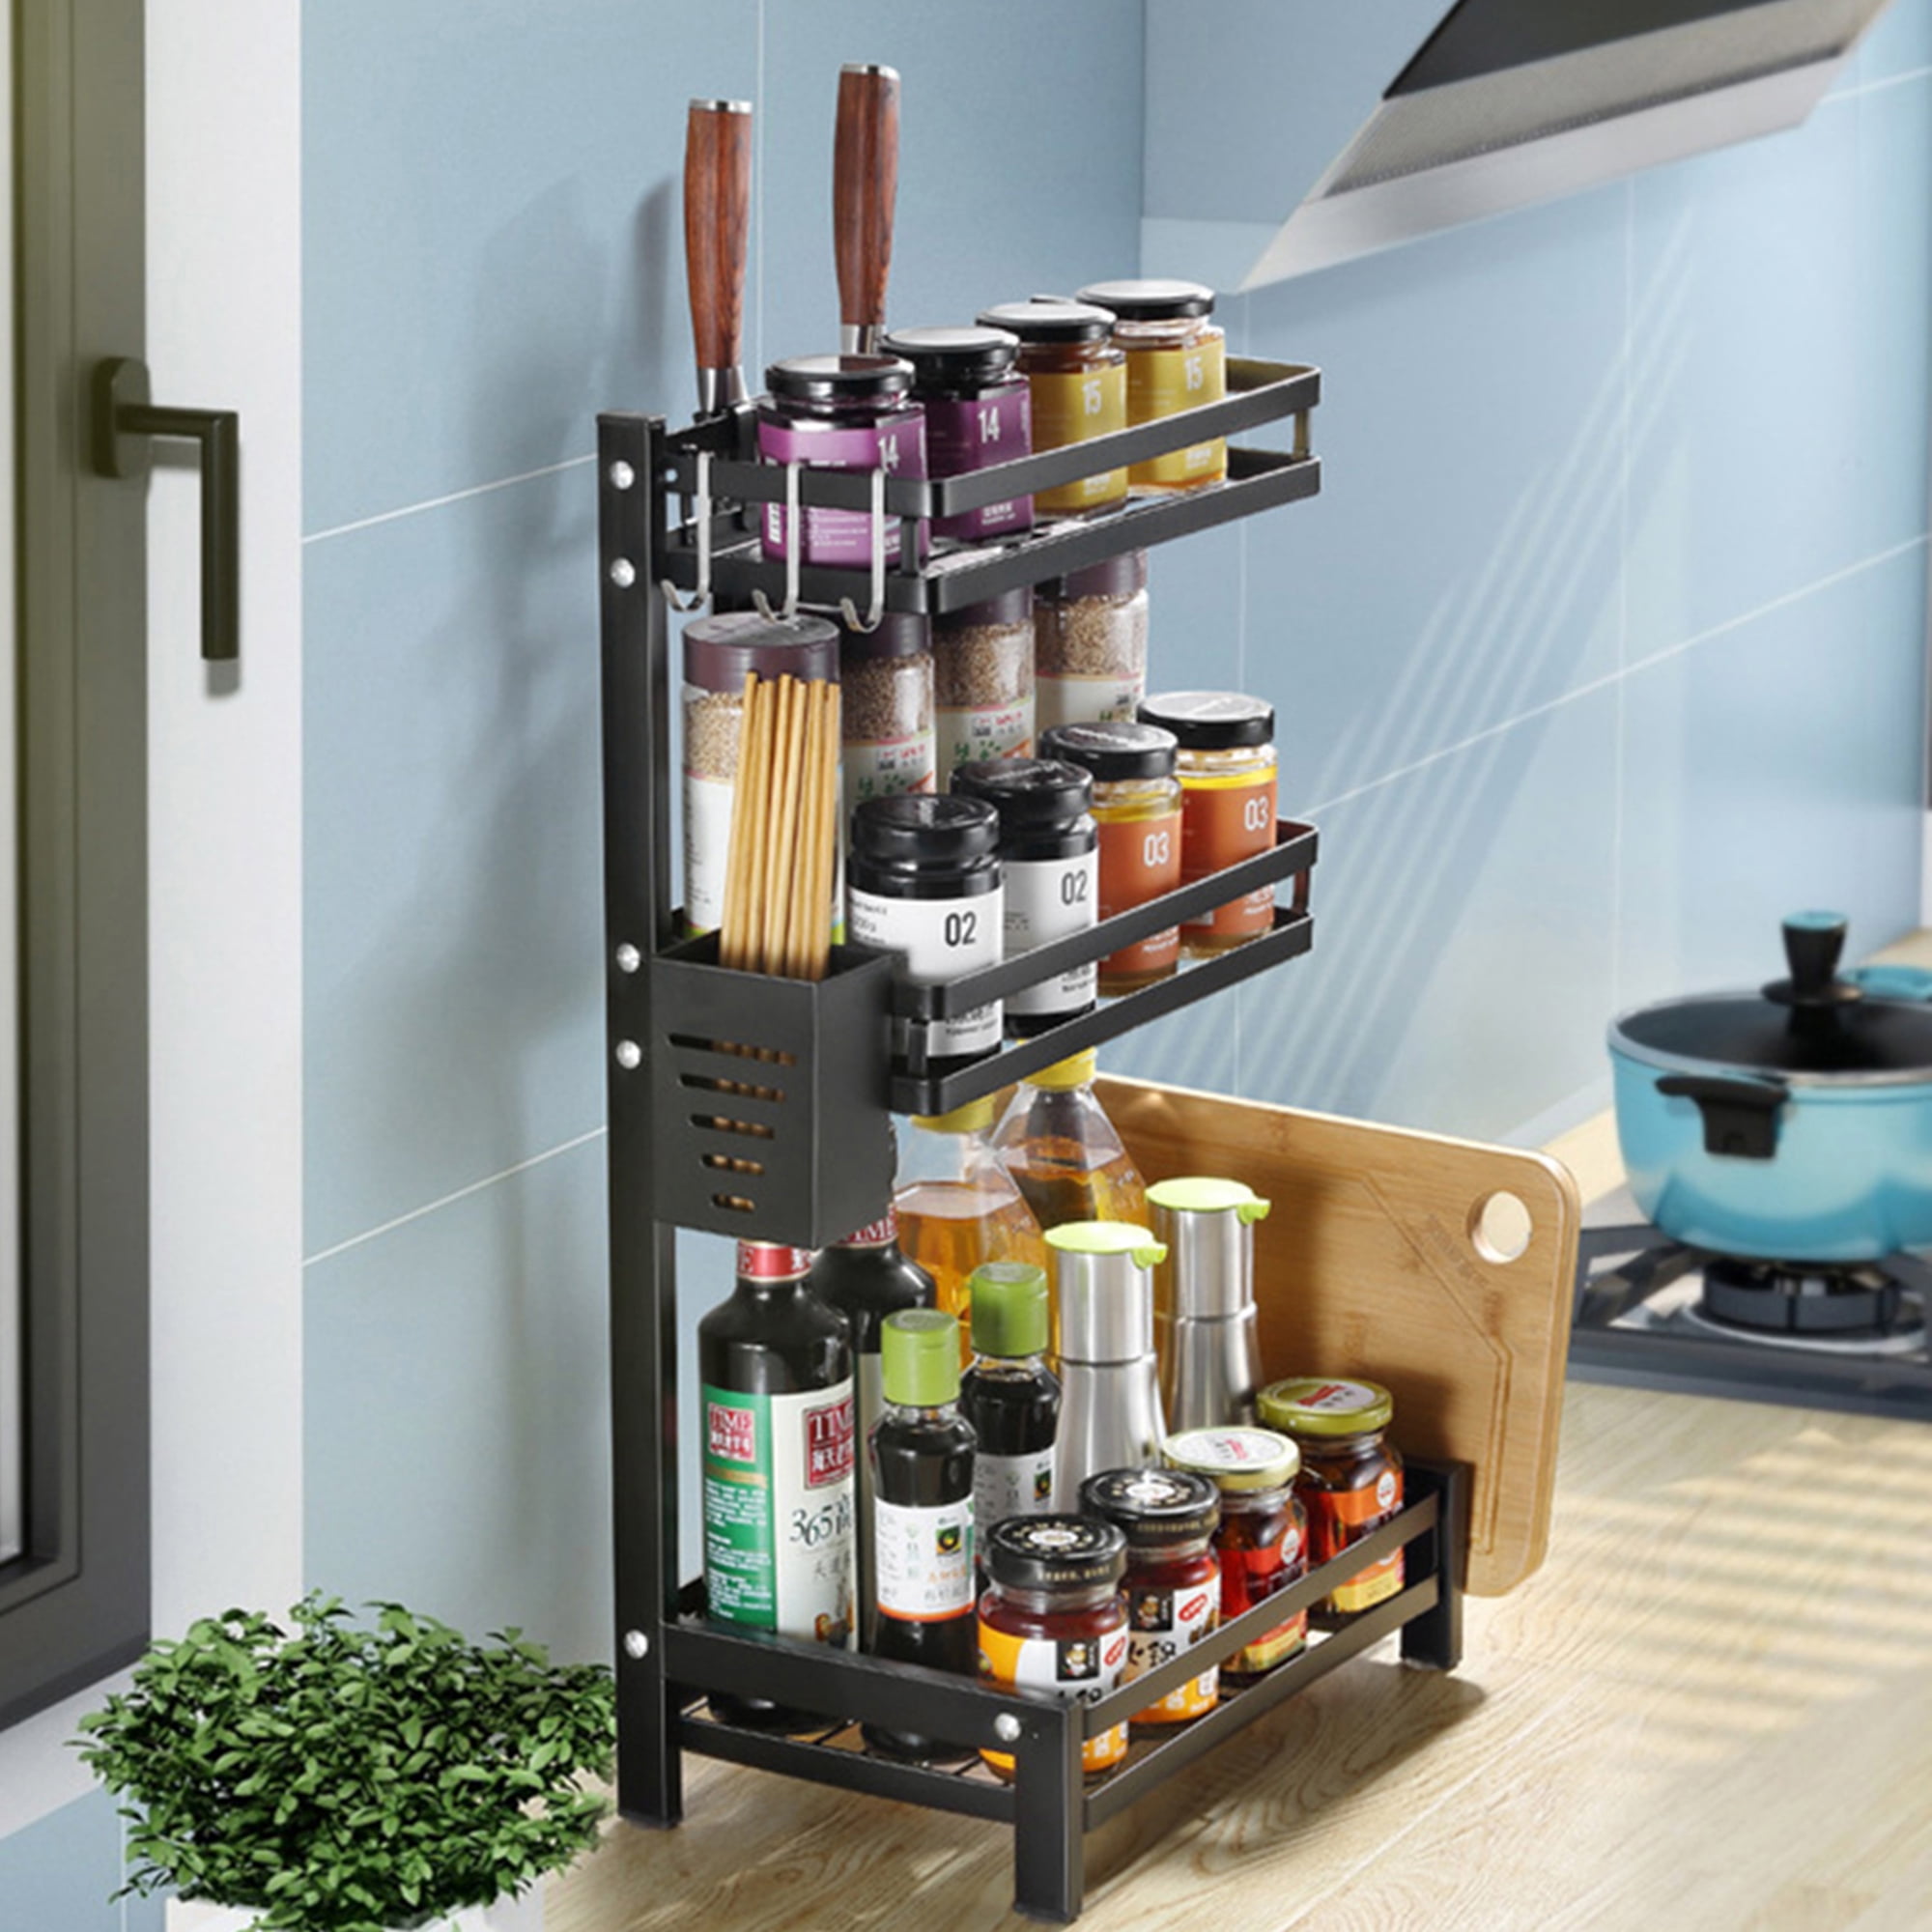 2-Tier Standing Spice Rack Organizer Shelf Holder Storage for Kitchen Countertop 